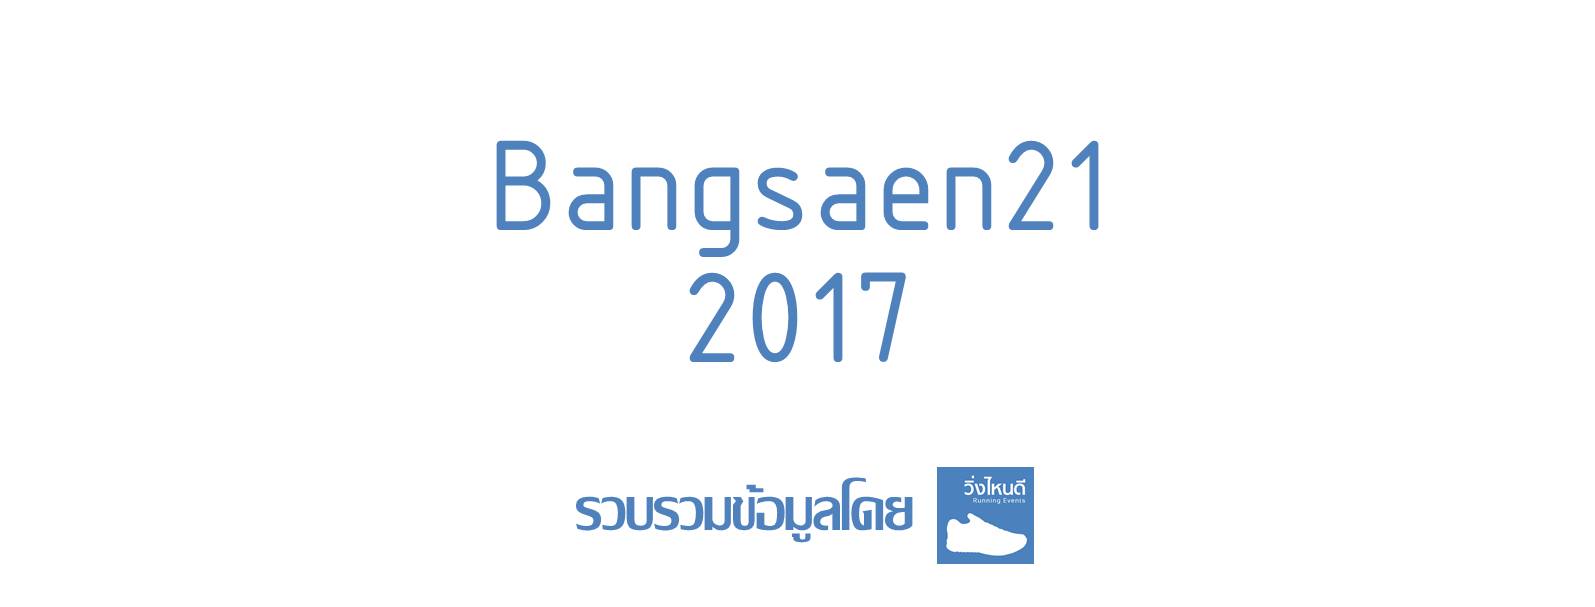 Bangsaen21 2017